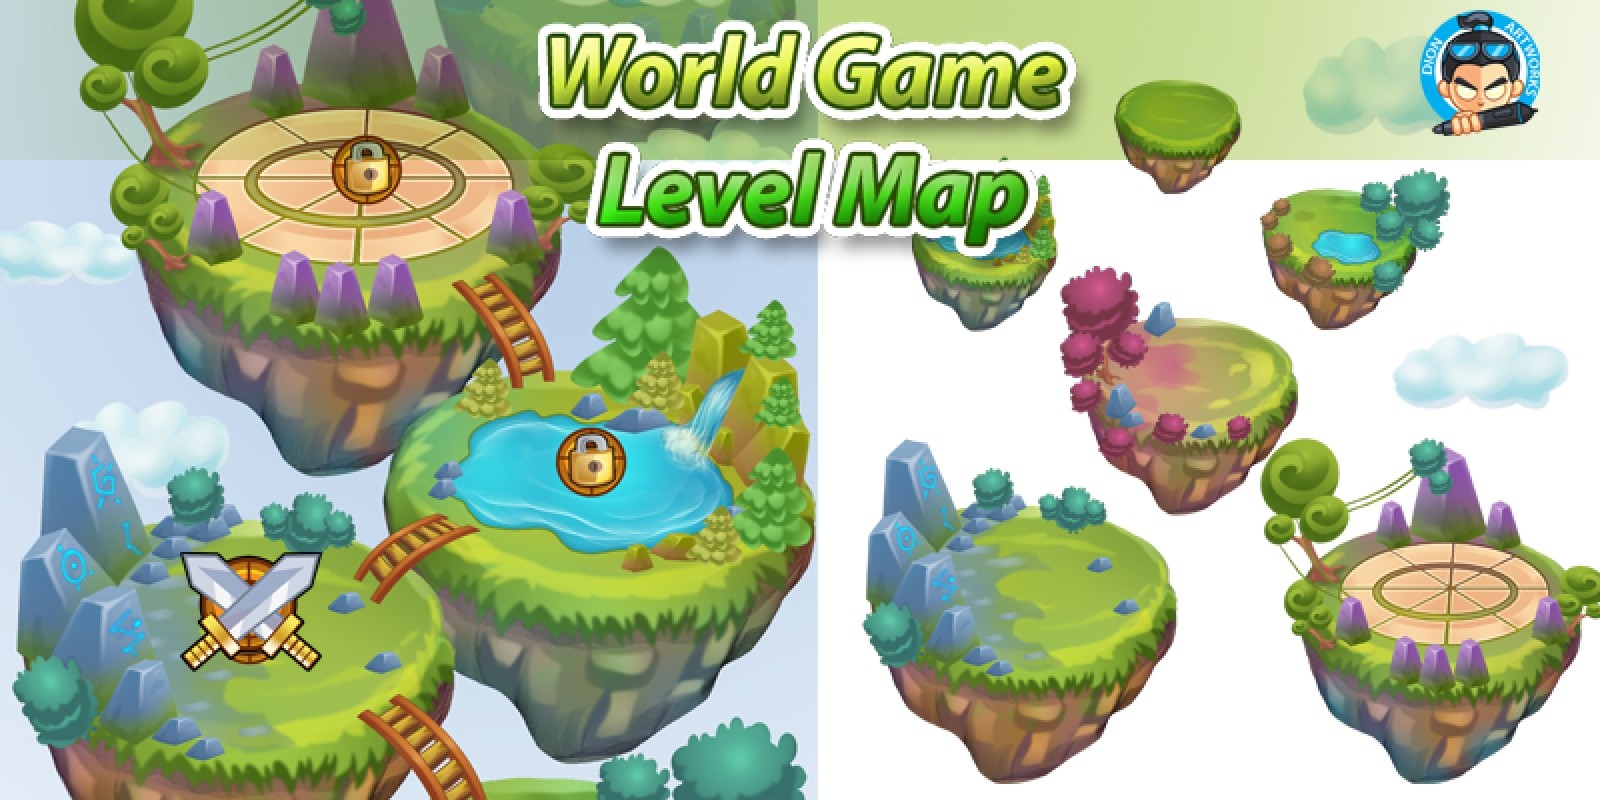 Game Level Map. Левел в игре. Зеленый мир игра. Уровни в игре. Играть новые уровни